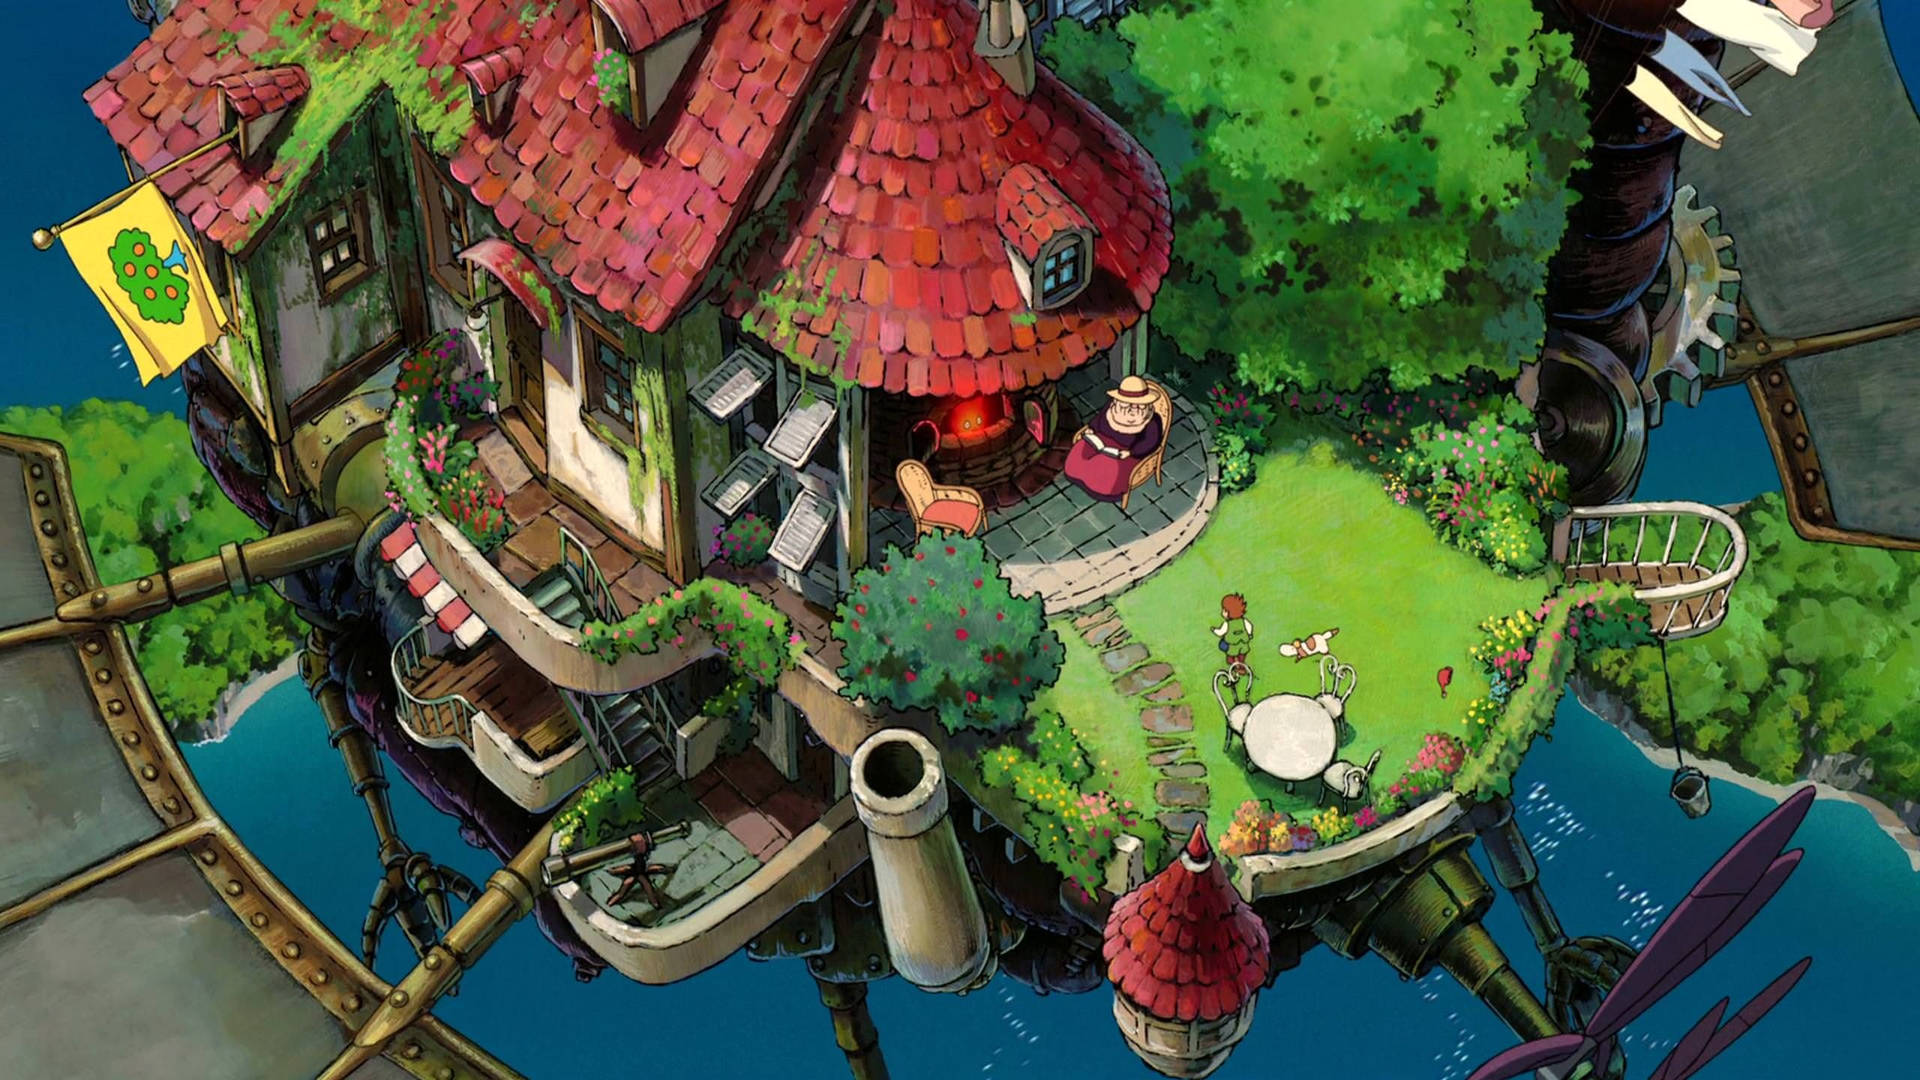 Studio Ghibli Baggrunde